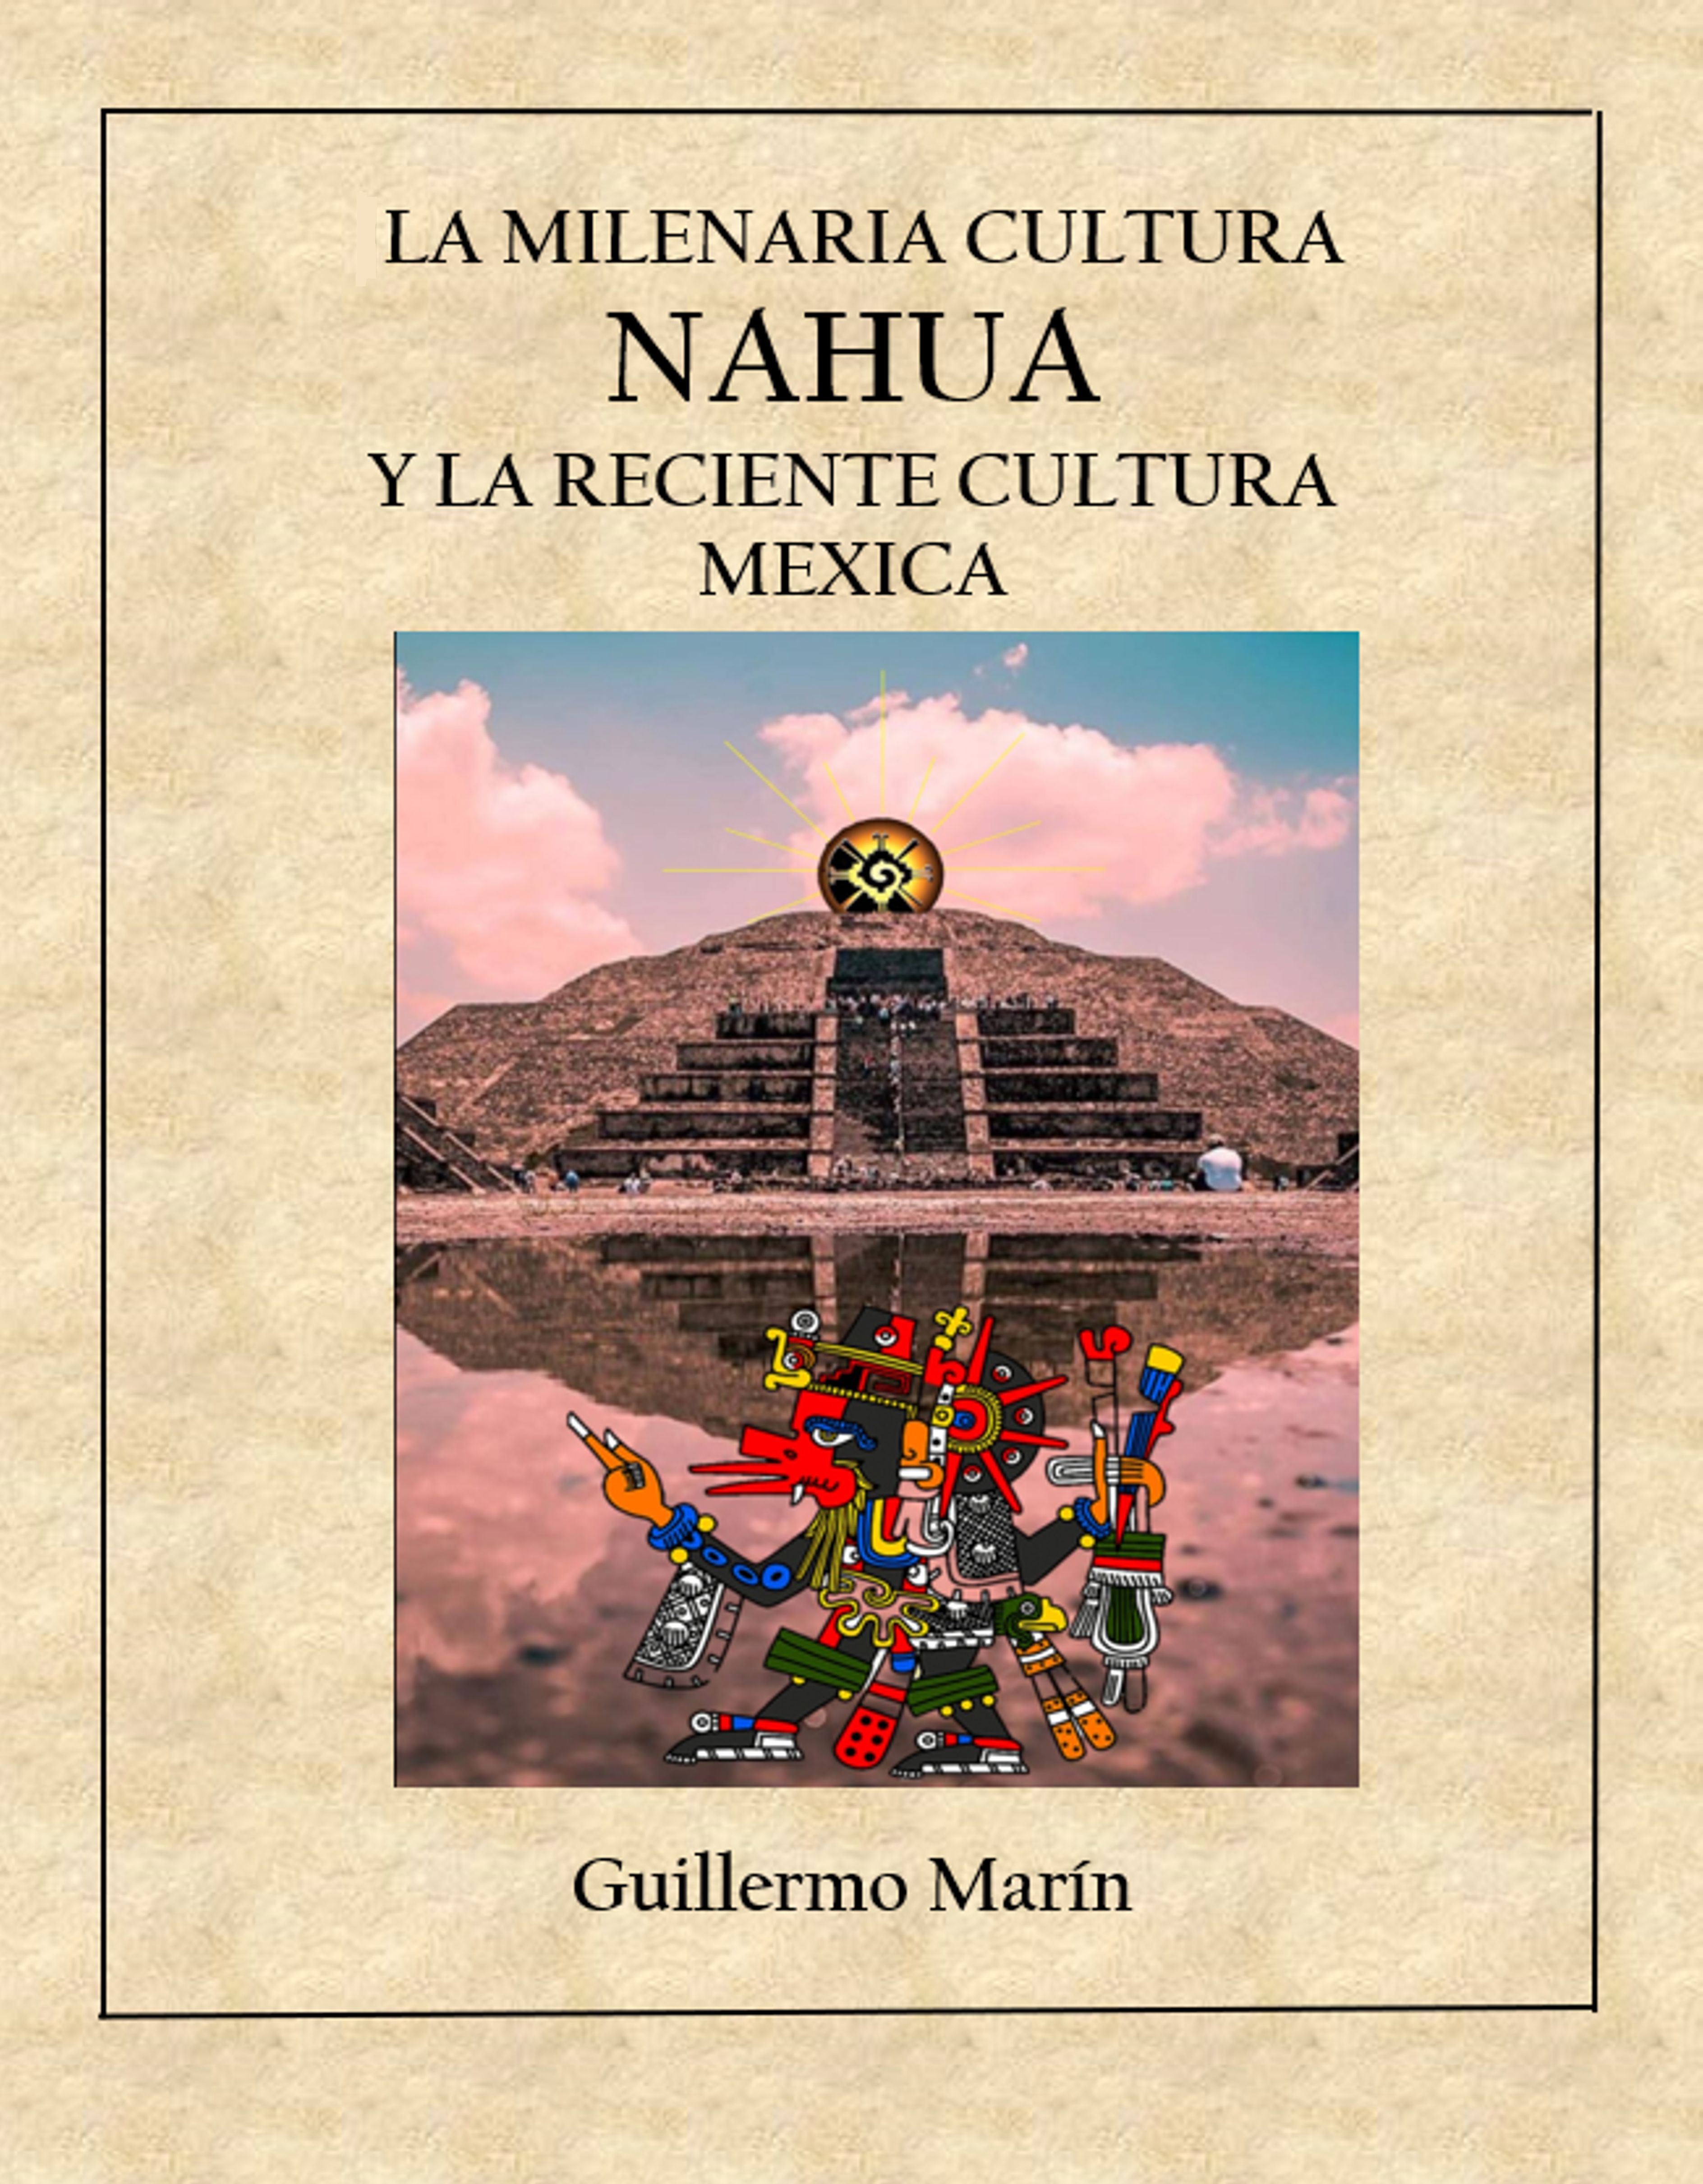 LA MILENARIA CULTURA NAHUA<br>Y LA RECIENTE CULTURA MEXICA<br>